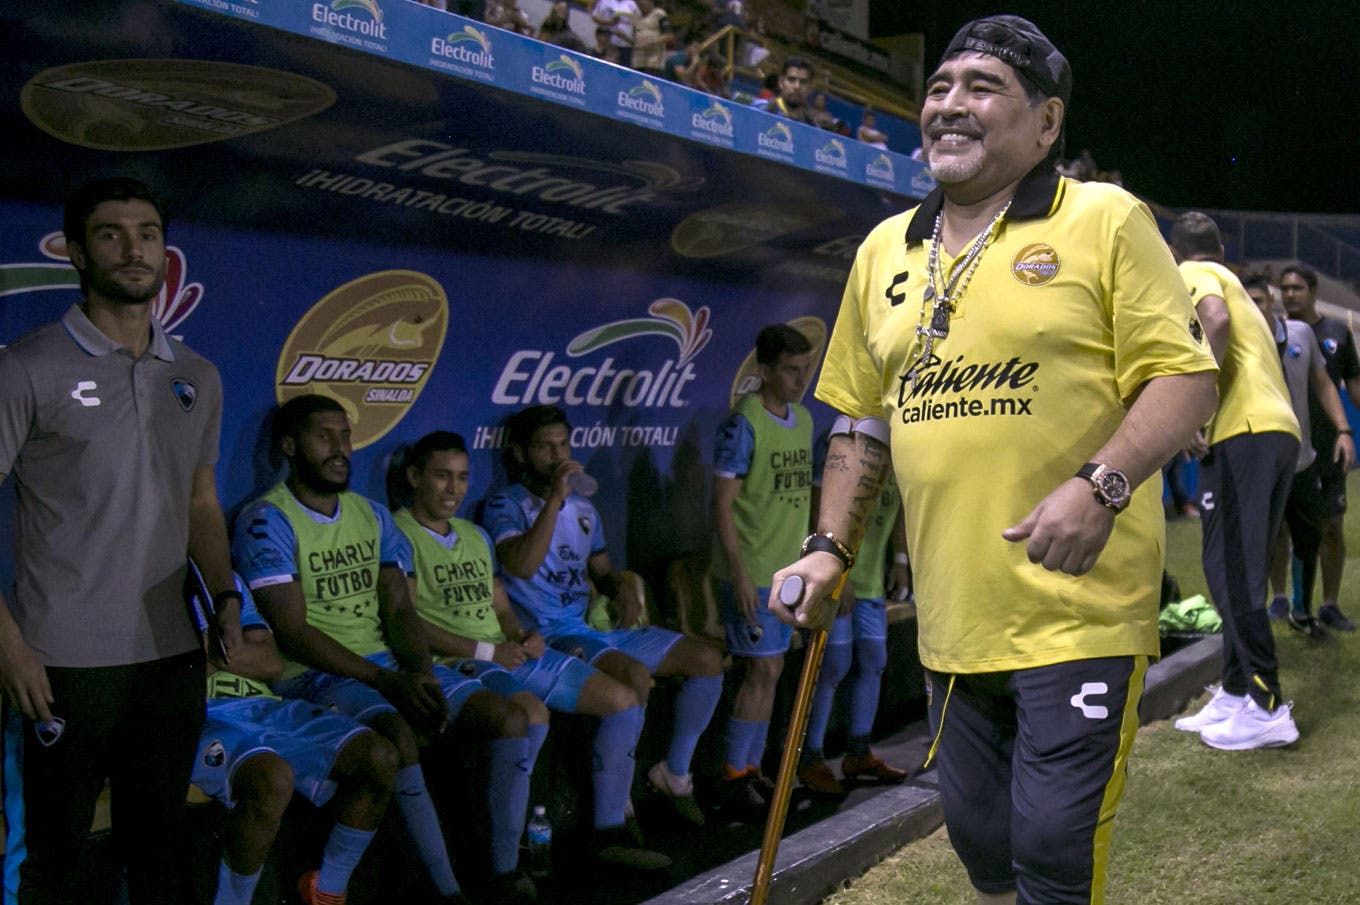 Cinco meses después de su muerte, Maradona sigue sin descansar en paz